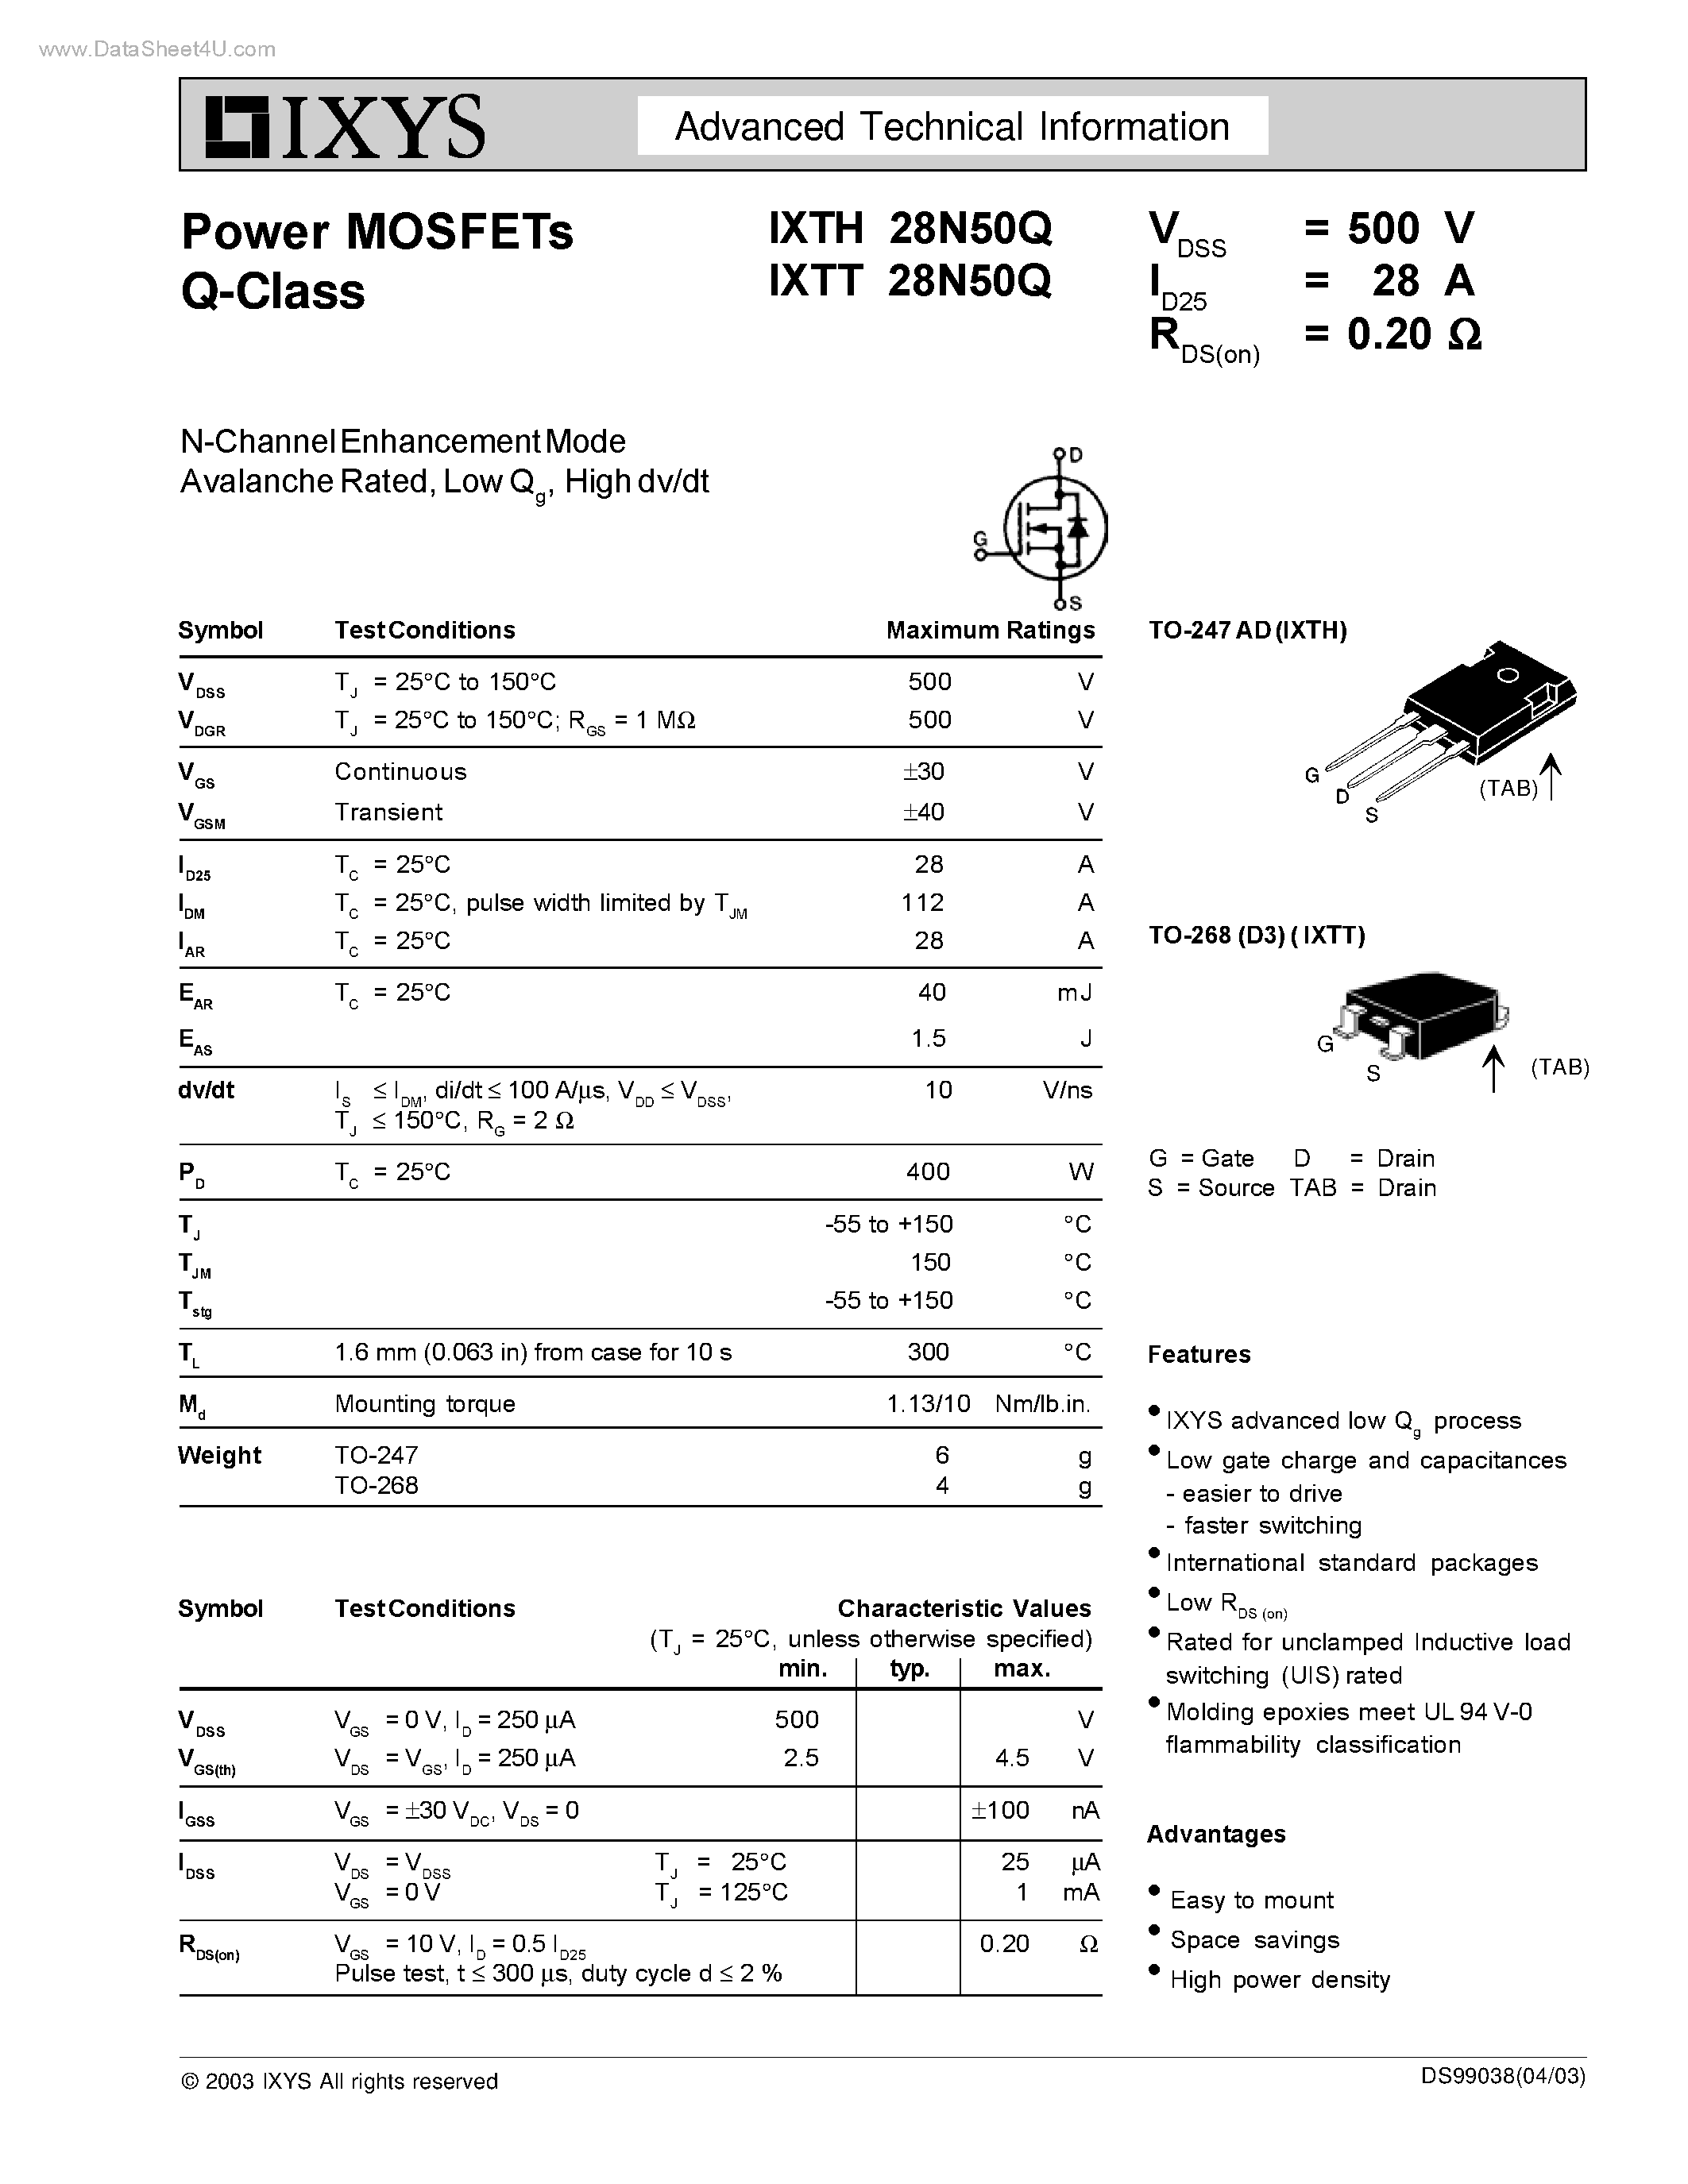 Даташит IXTH28N50Q - Power MOSFETs Q-Class страница 1